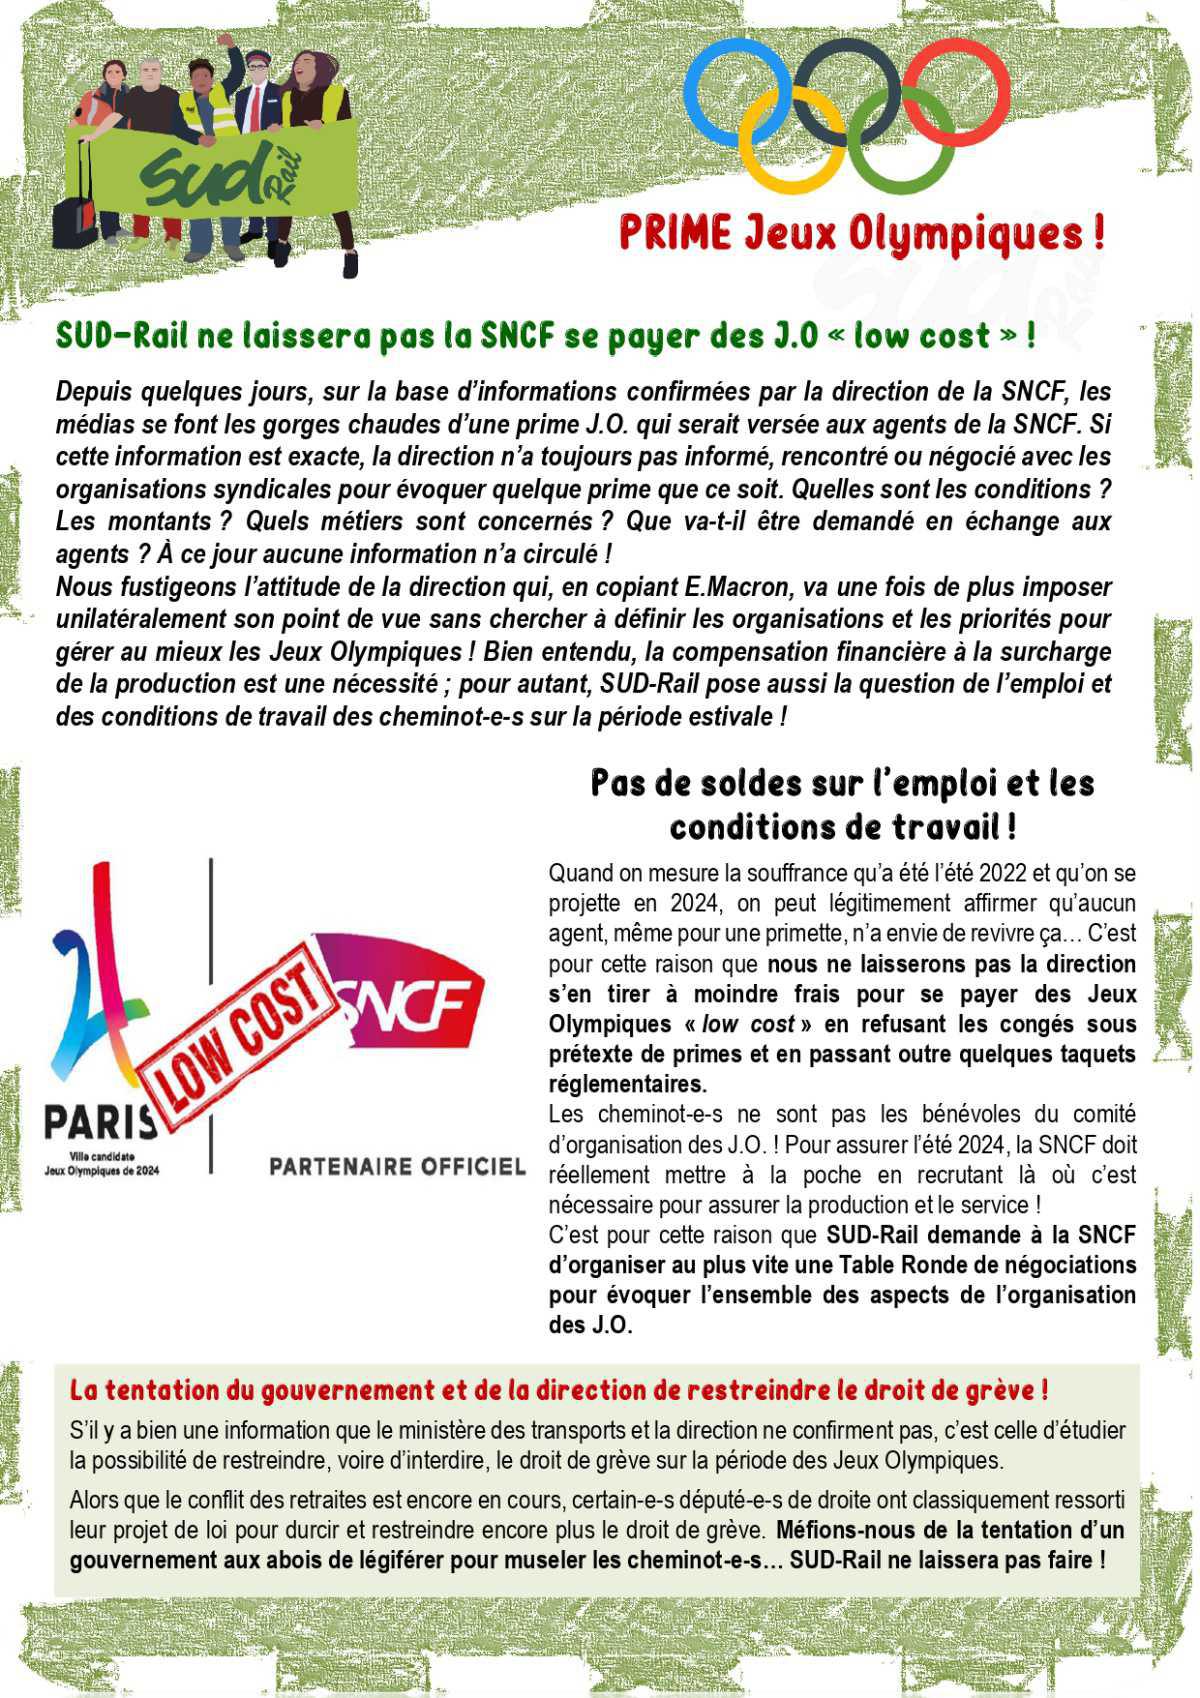 Prime JO - SUD-Rail ne laissera pas la SNCF se payer des JO "low cost" !